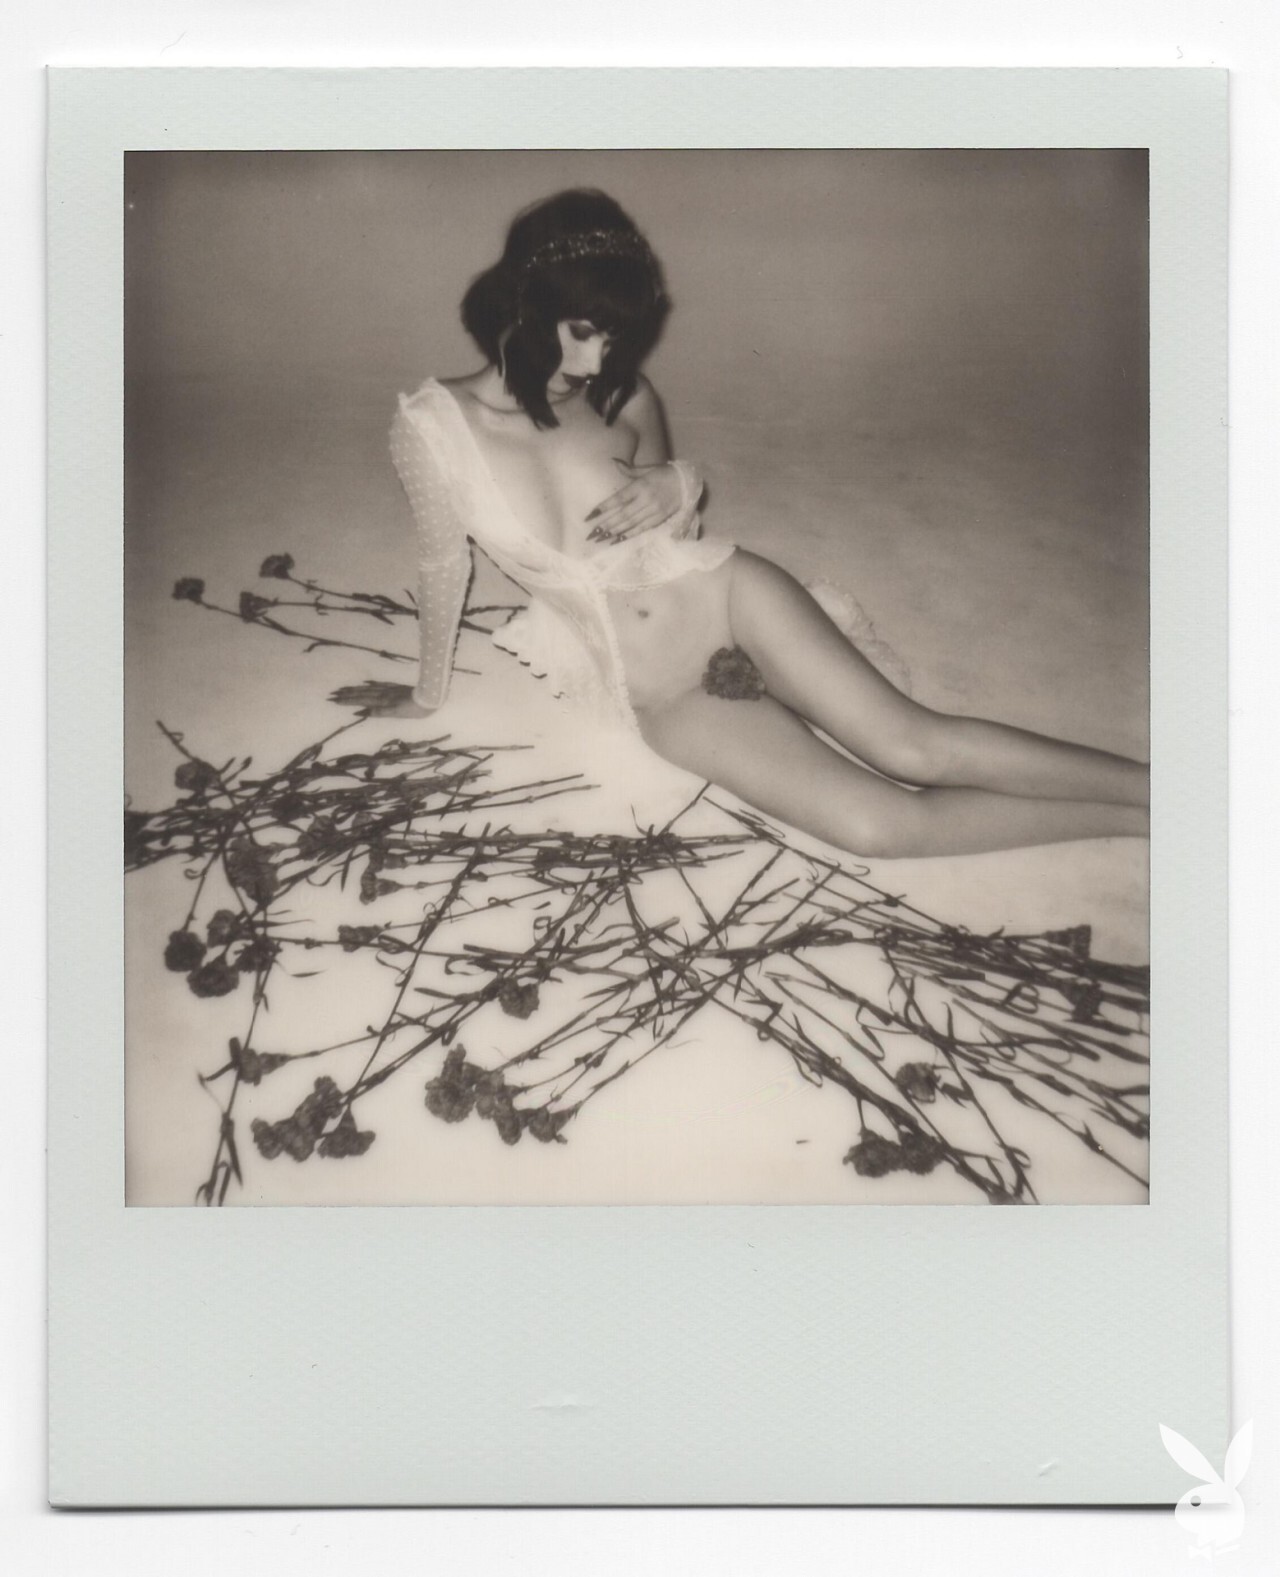 Carolina Ballesteros Nude - Playboy (38 Photos) .